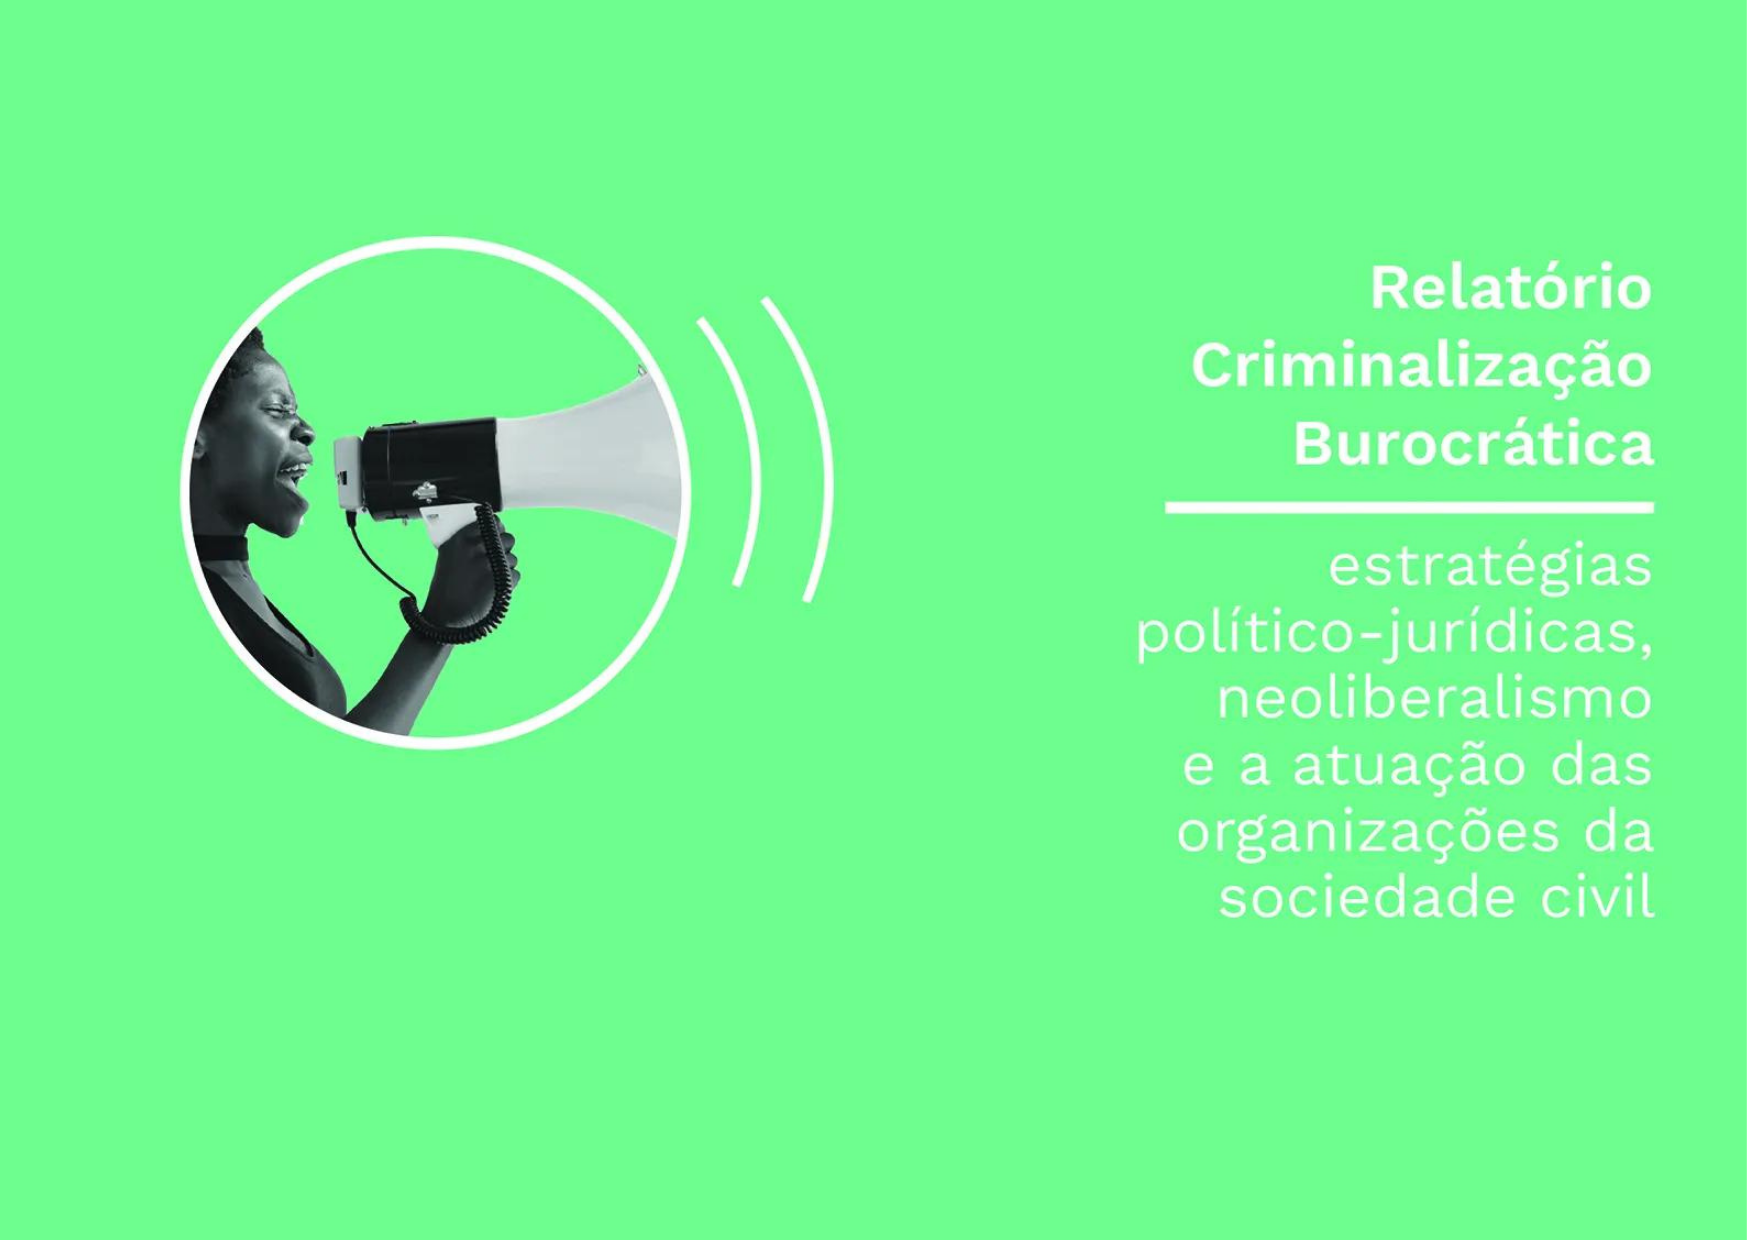 Criminalização Burocrática: estratégias político-jurídicas, neoliberalismo e a atuação das organizações da sociedade civil.